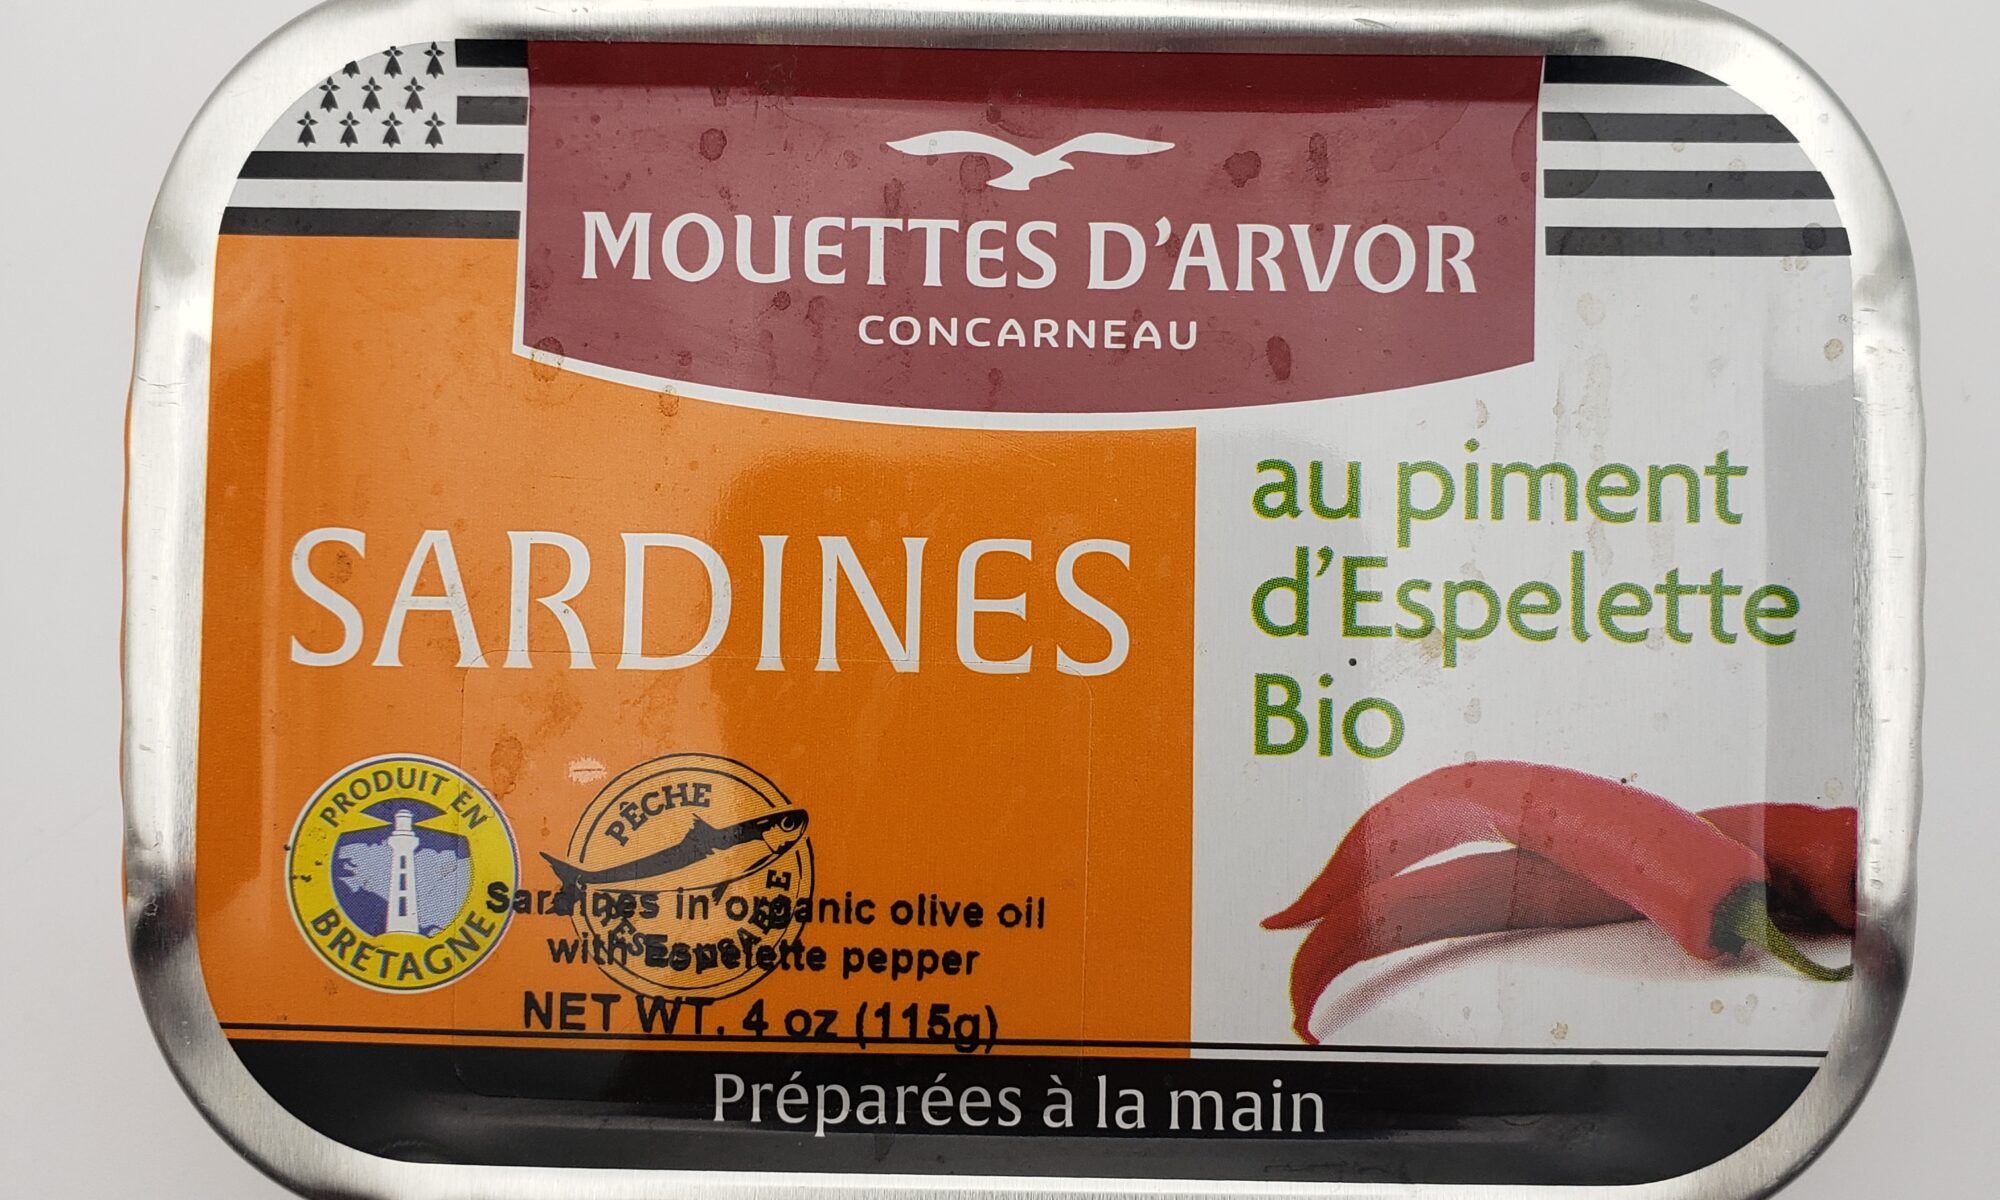 Image of Mouette d'arvor sardines with piment d'espelette